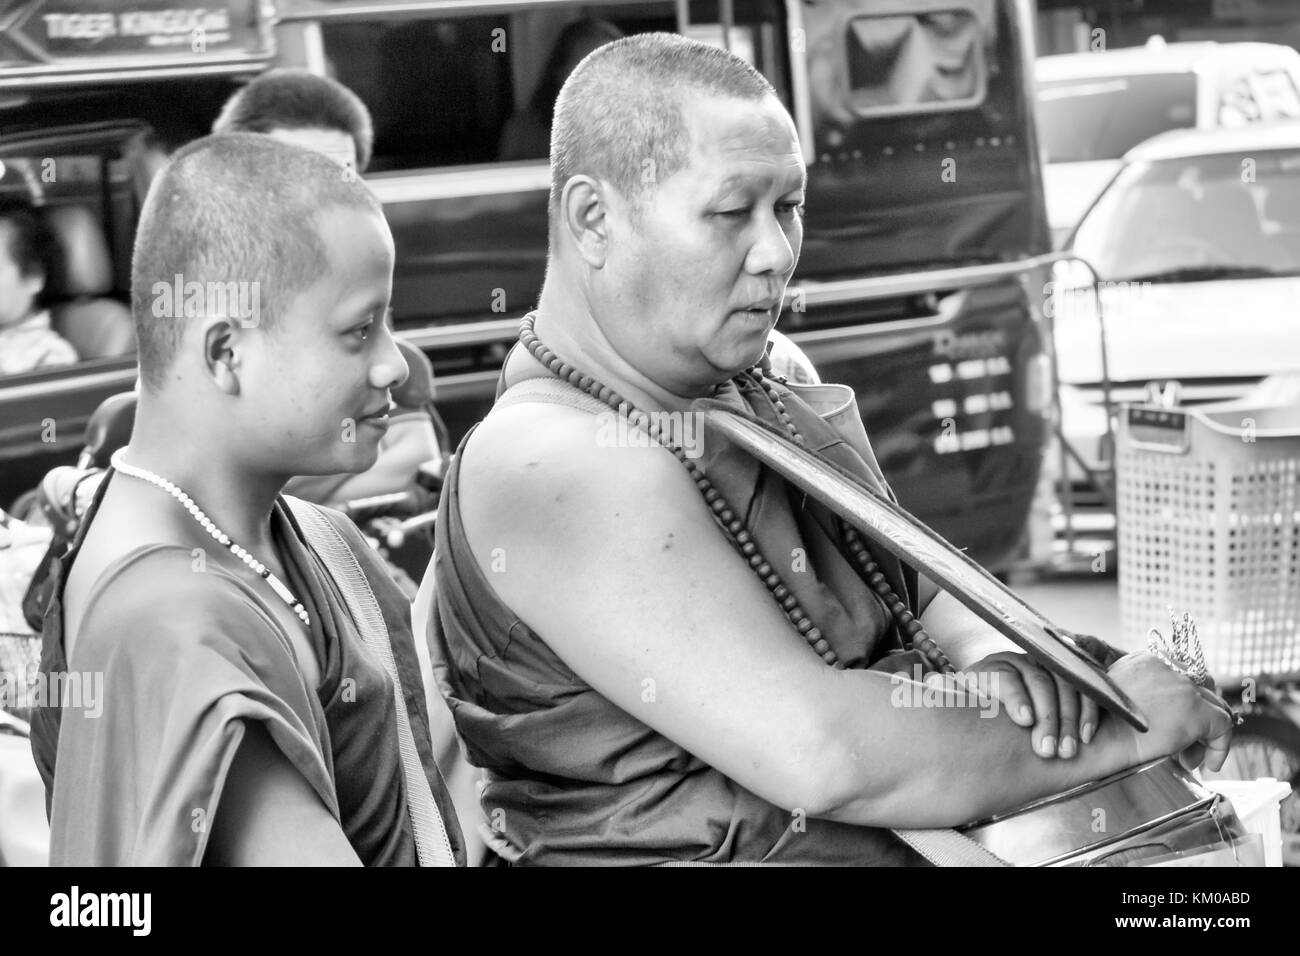 La collecte de l'aumône des moines à Chiang Mai, Thaïlande Banque D'Images